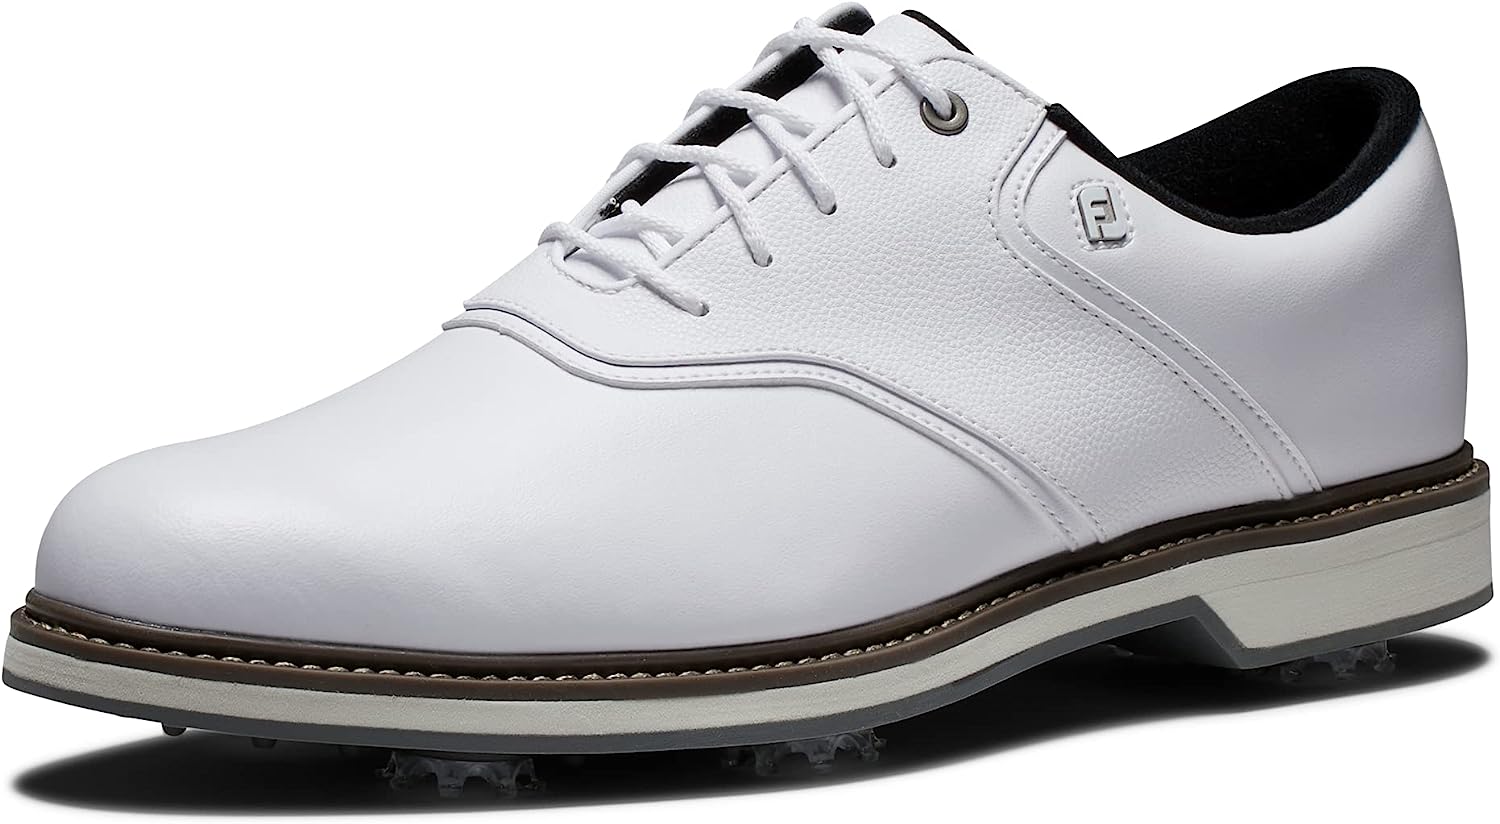 FootJoy Men's Fj Originals Golf Shoe